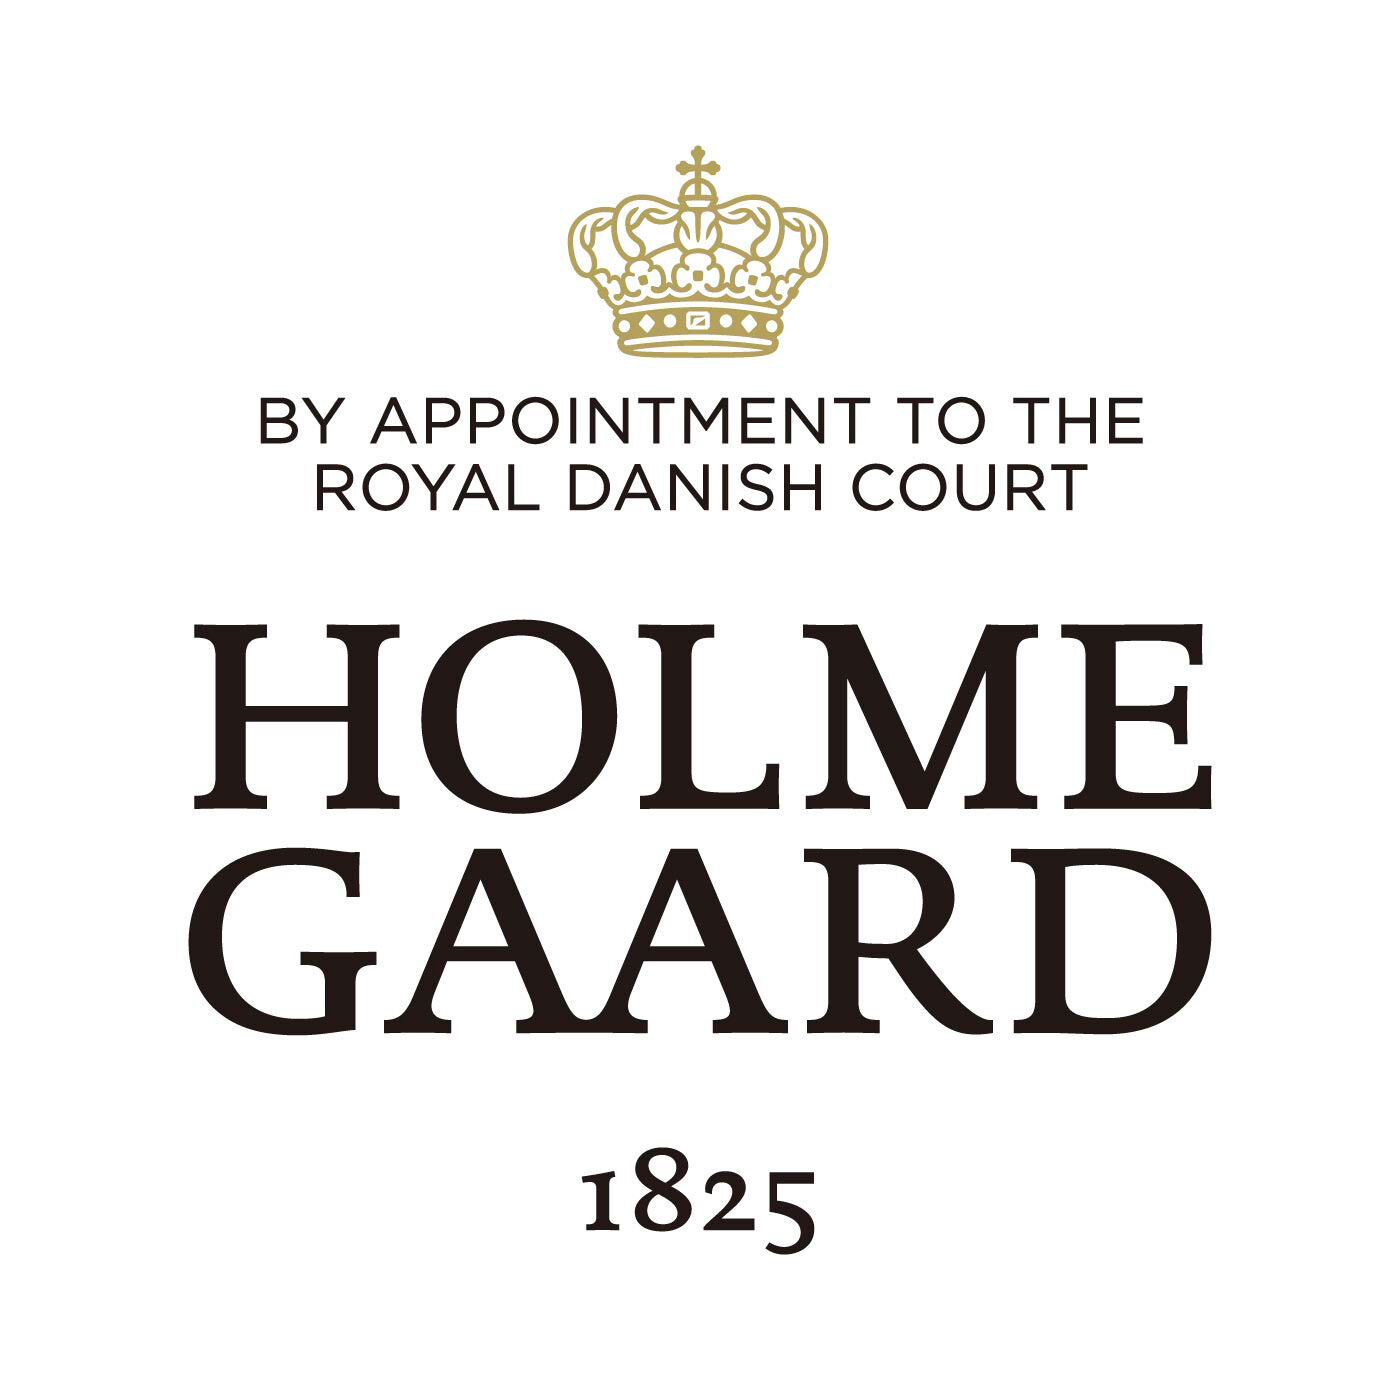 SeeMONO|ガラスのウェーブが美しい　一年中飾れるクリスマスツリー〈Ｌグリーン〉／ホルムガード|HOLMEGAARD（ホルムガード）は、1825年にデンマークに生まれた伝統あるガラスブランドです。1900年代、多くの芸術家が手掛け始めるホルムガードの商品は、そのクオリティの高さからデンマーク王室 御用達ブランドに選ばれました。熟練の職人たちによる吹きガラス製法で生み出されるユニークなデ ザインのガラス製品は世界中の美術館に所蔵されています。